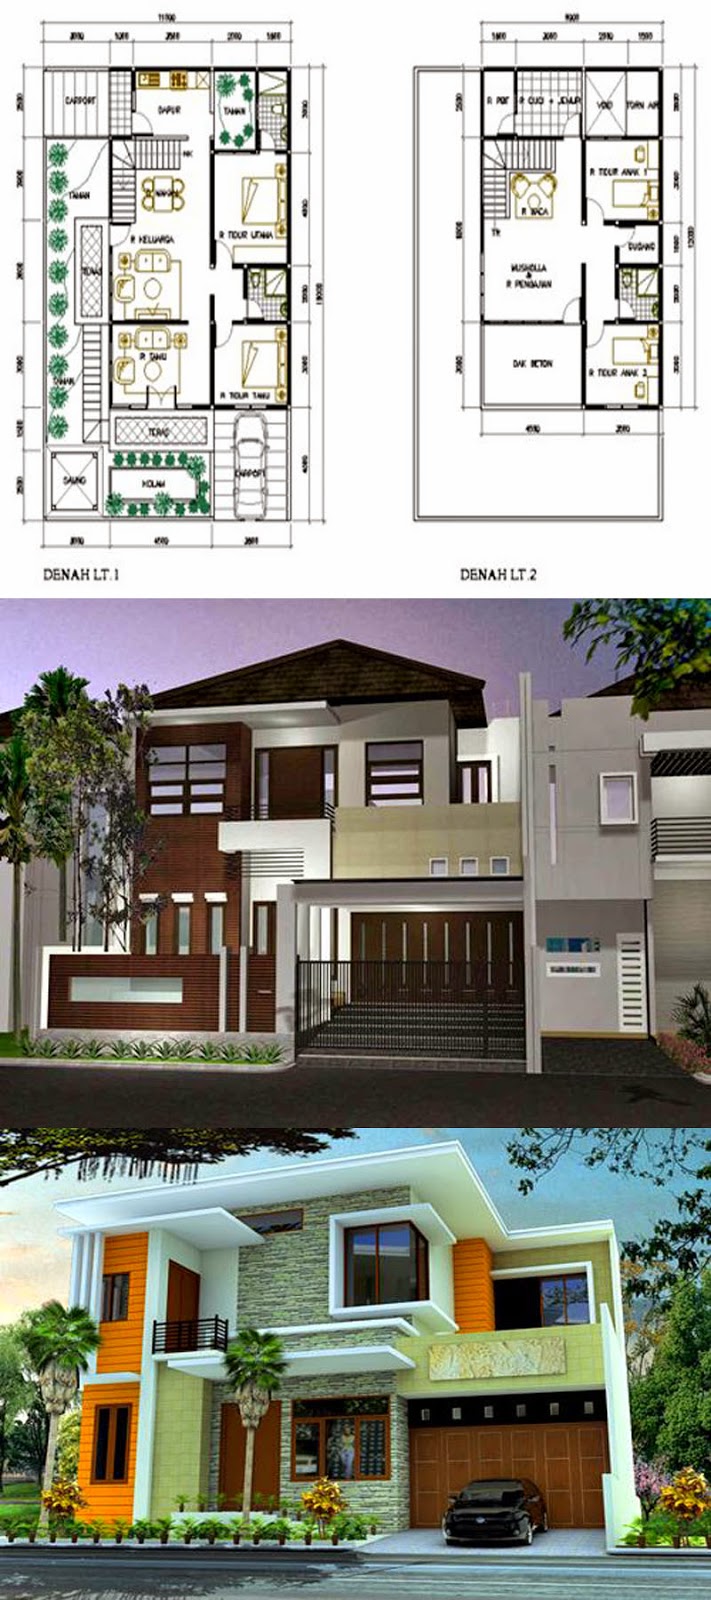 65 Desain Rumah Minimalis 2 Lantai Type 70  Desain Rumah 